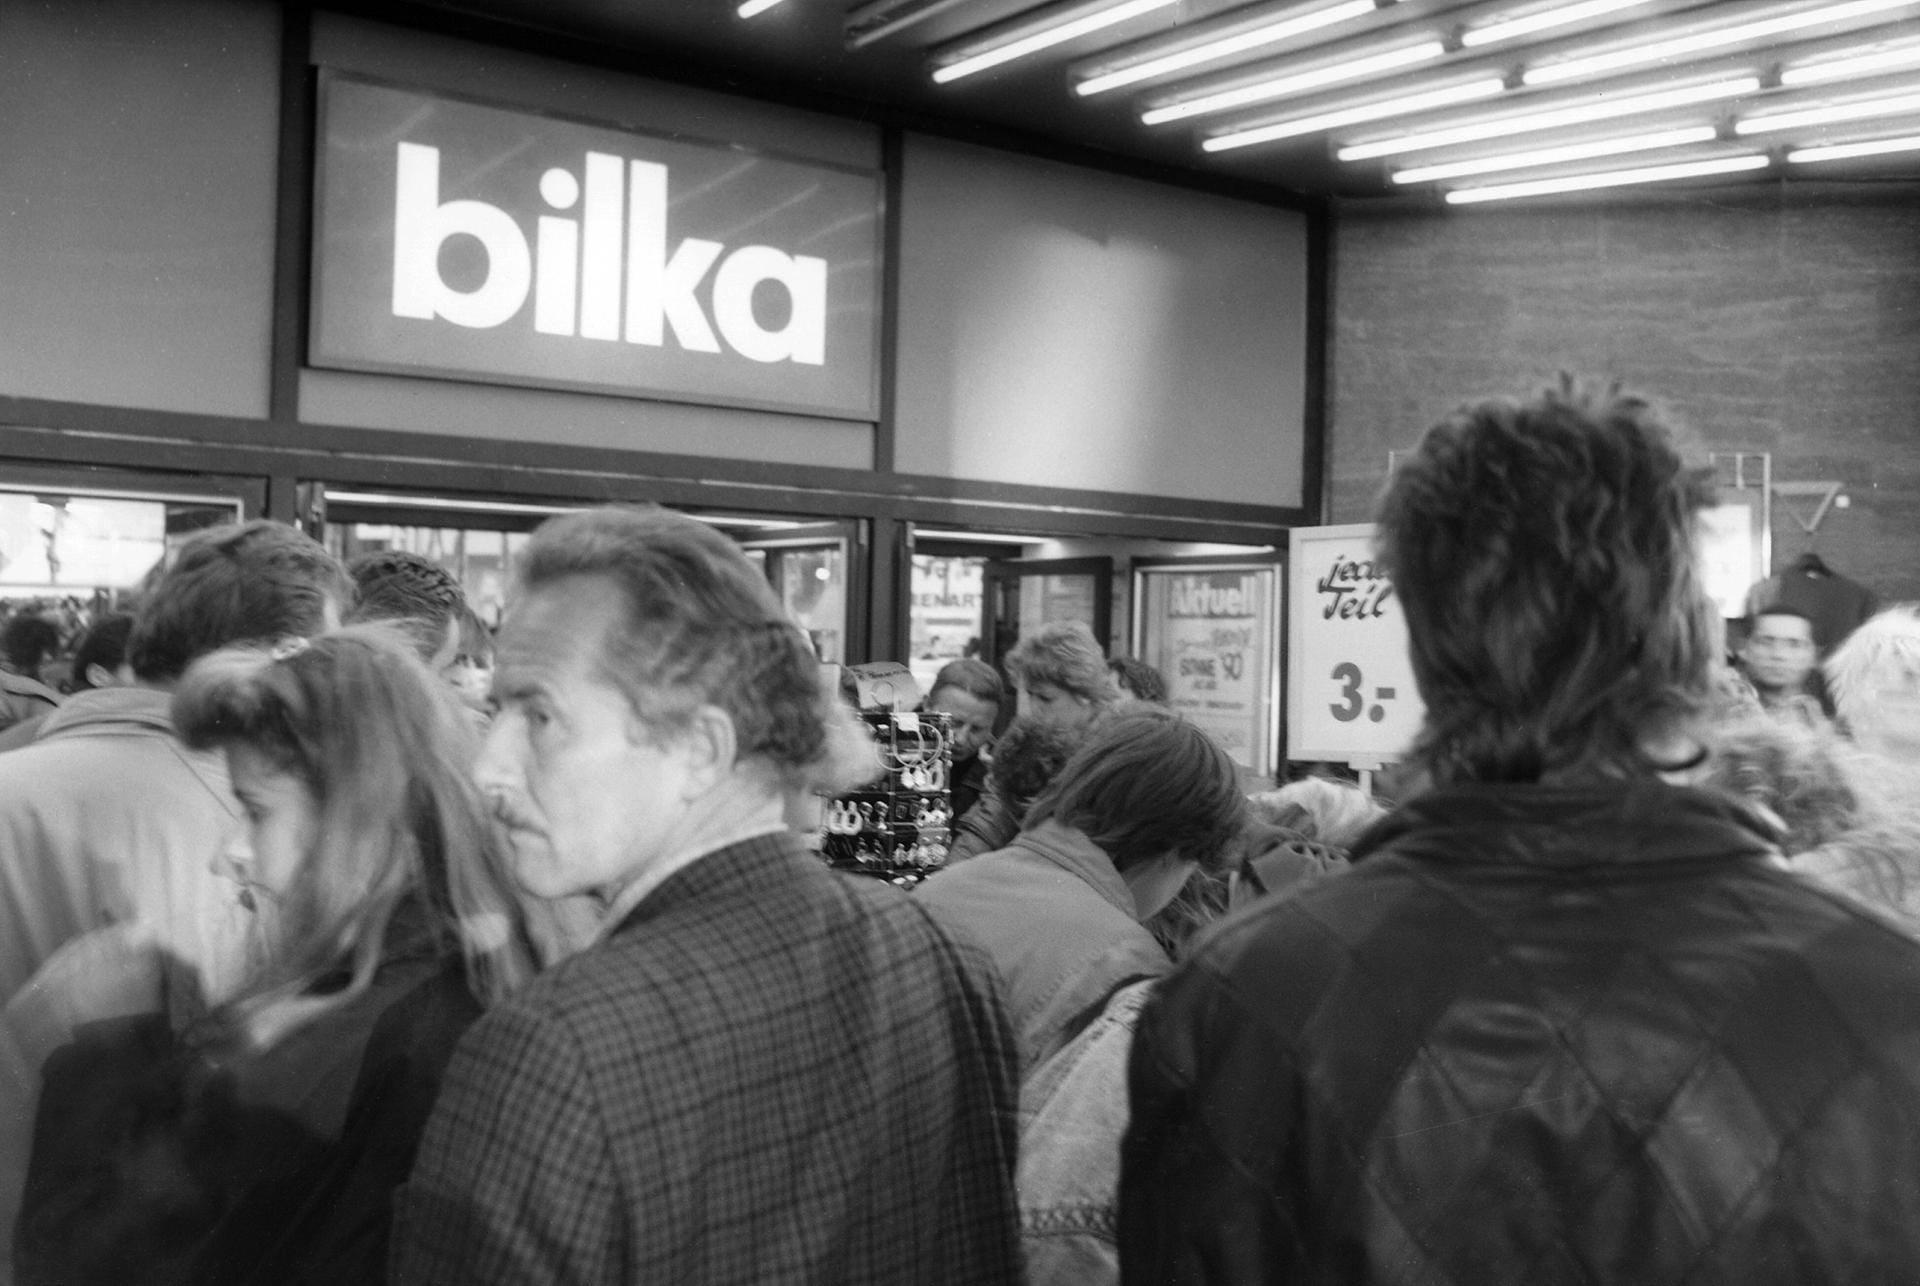 Bilka: 1952 begann die Bilka-Geschichte mit der ersten Filiale in Berlin. In ihrer Hochphase hatte die Billigkaufhaus-Kette (daraus setzt sich der Name Bilka zusammen) 53 Filialen. Große Gewinne warfen sie aber nicht ab. So begann der Abstieg. Etliche Filialen wurden verkauft, andere wurden zu Hertie-Kaufhäusern. 1996 schloss die letzte Filiale. Seitdem ist der Name Bilka ein Stück deutscher Kaufhaus-Geschichte.